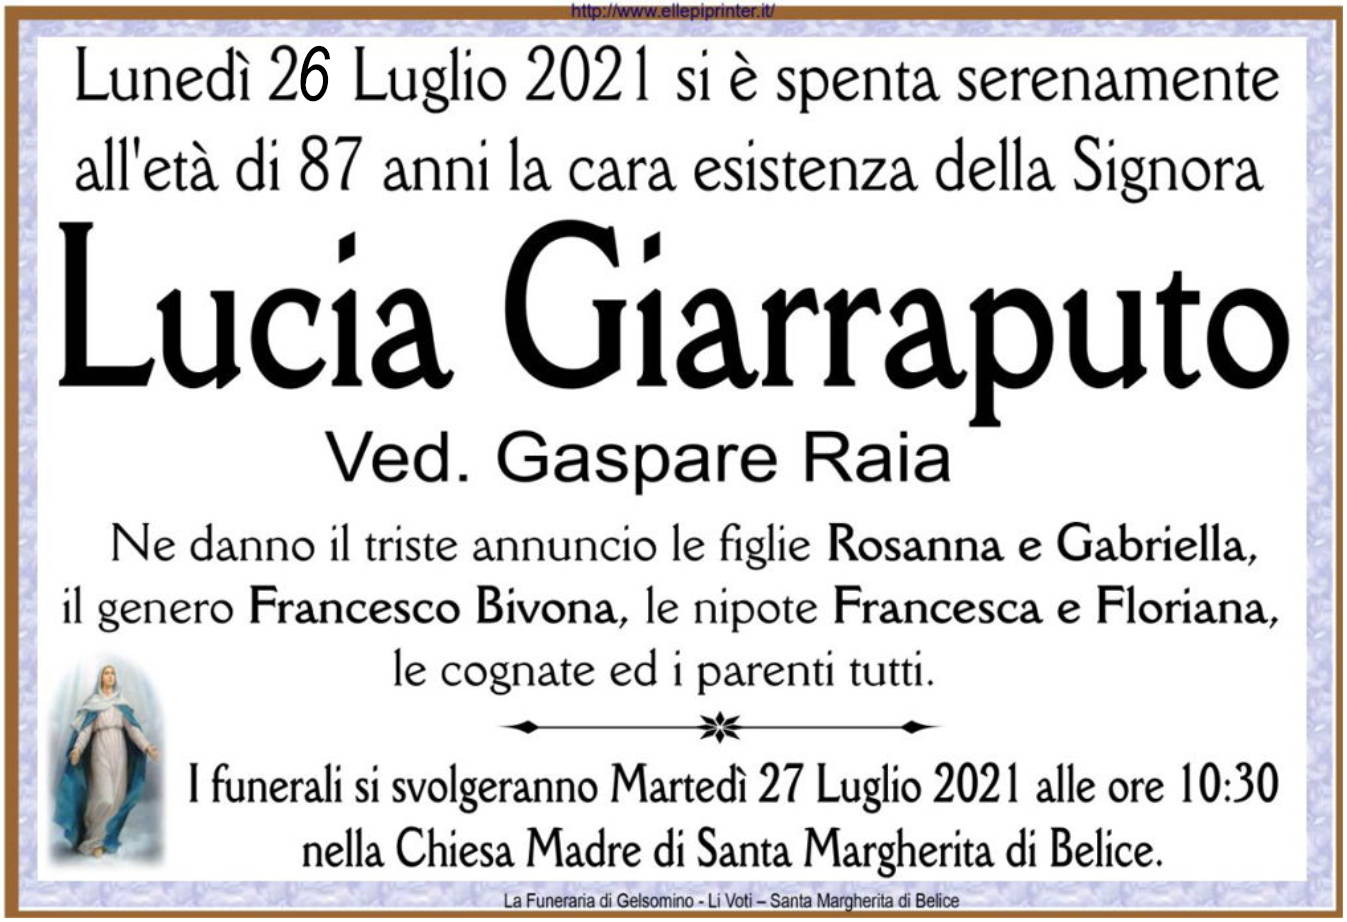 Lucia Giarraputo